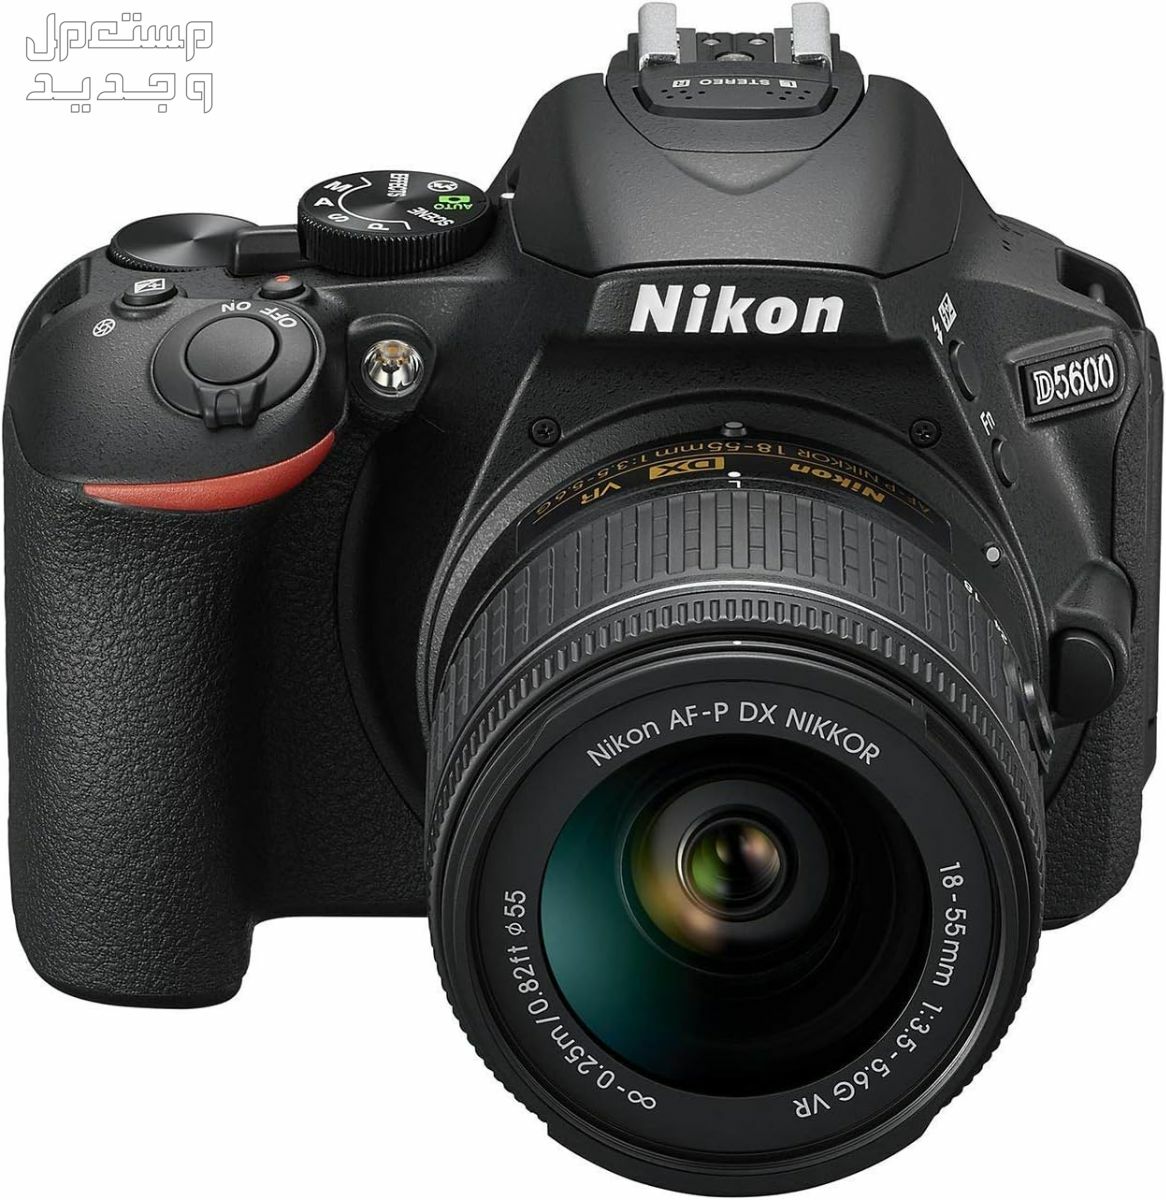 10 كاميرات تصوير ماركات عالمية بأسعار رخيصة في المغرب سعر كاميرا Nikon D5600